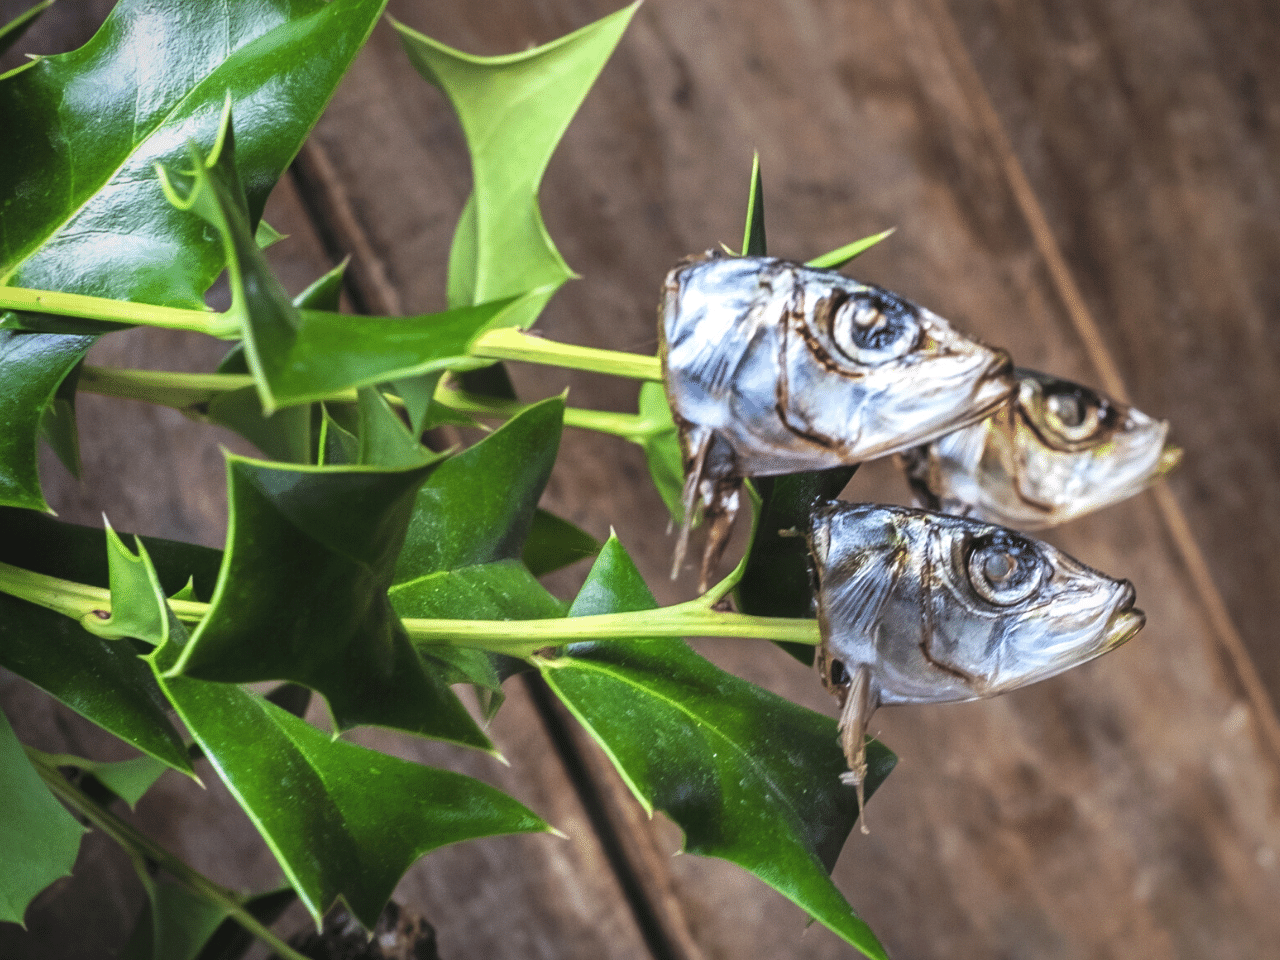 Hiiragiiwashi - sardine heads stuck on holly branches.